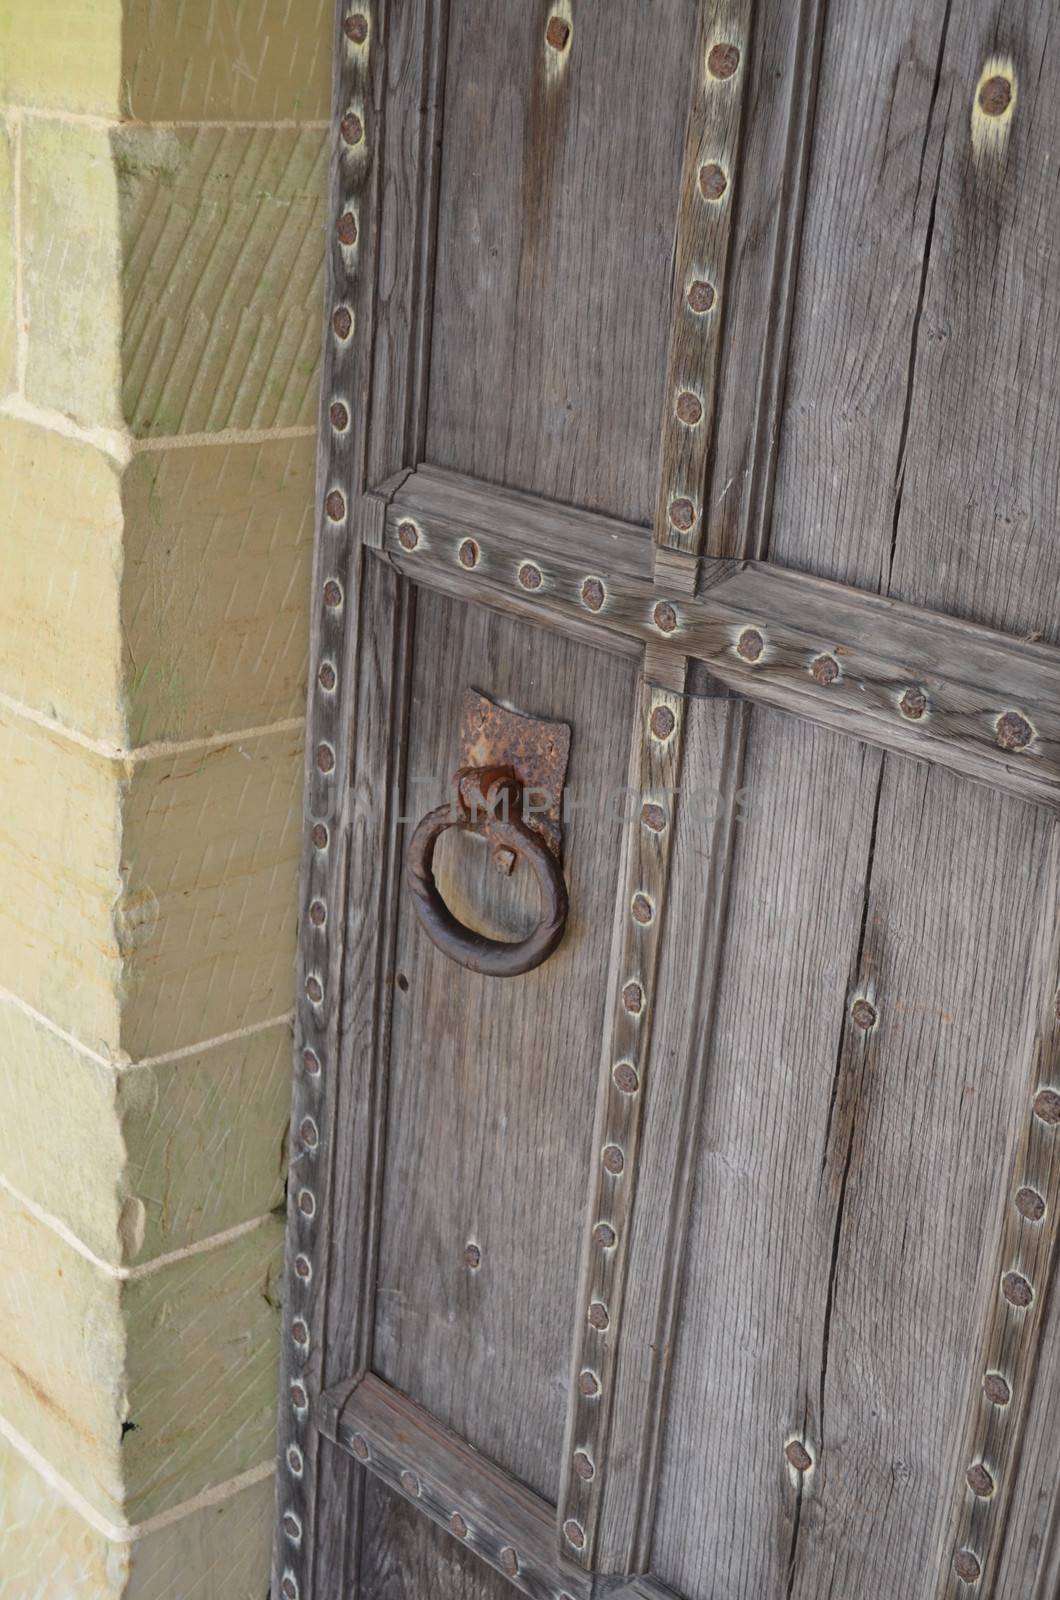 Ancient solid oak door with iron door handle set in a solid stone surround.